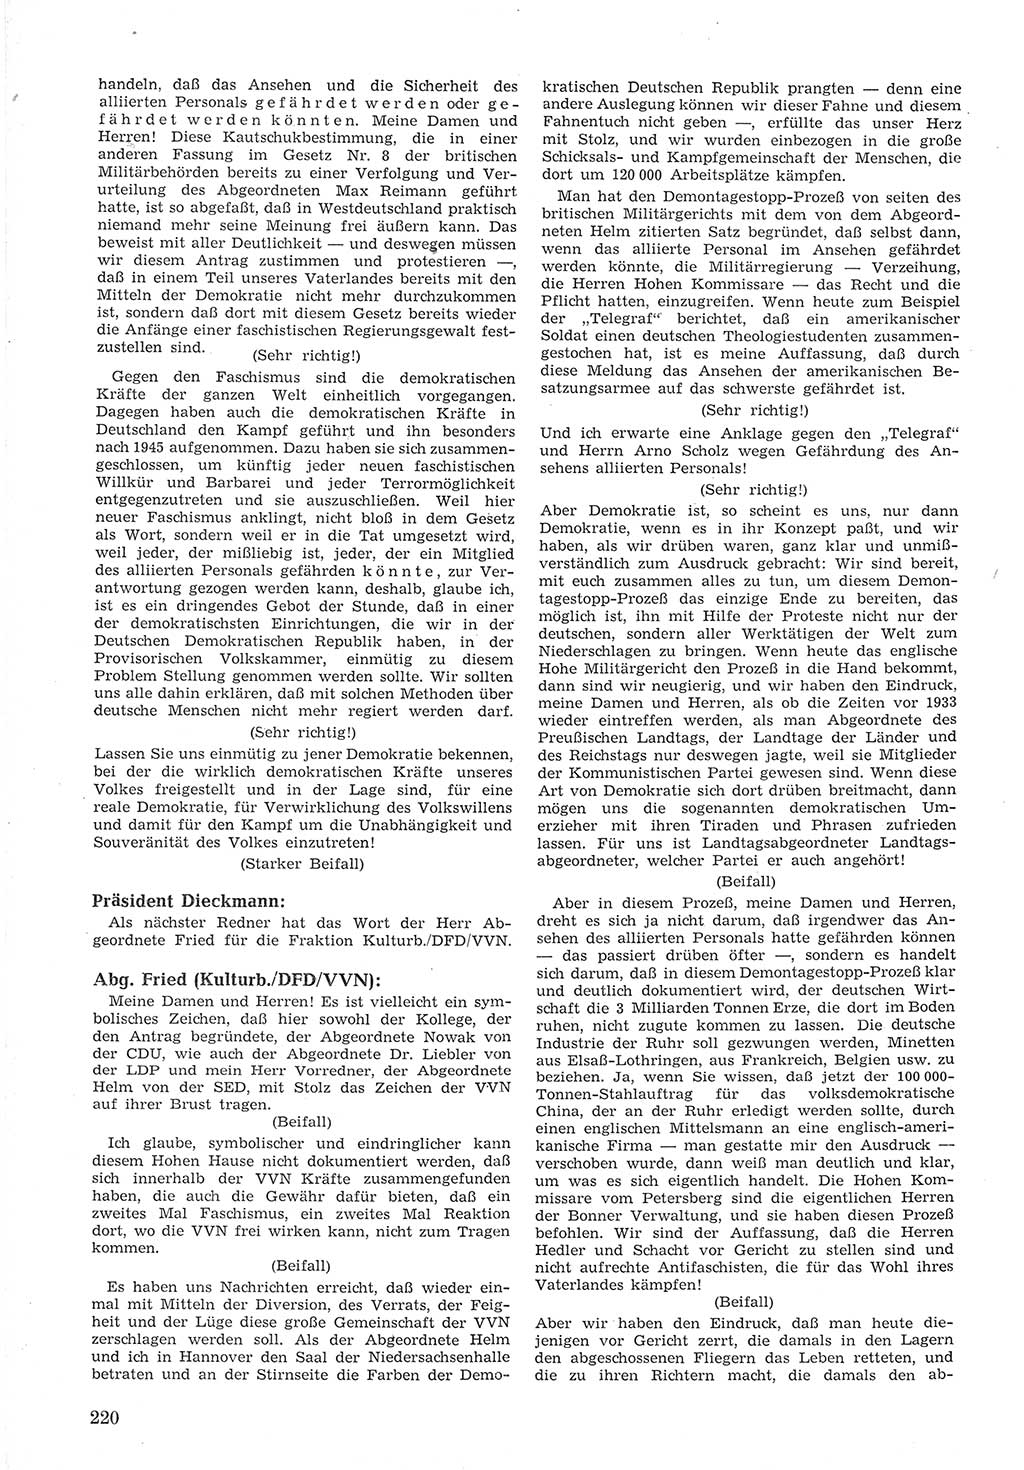 Provisorische Volkskammer (VK) der Deutschen Demokratischen Republik (DDR) 1949-1950, Dokument 234 (Prov. VK DDR 1949-1950, Dok. 234)